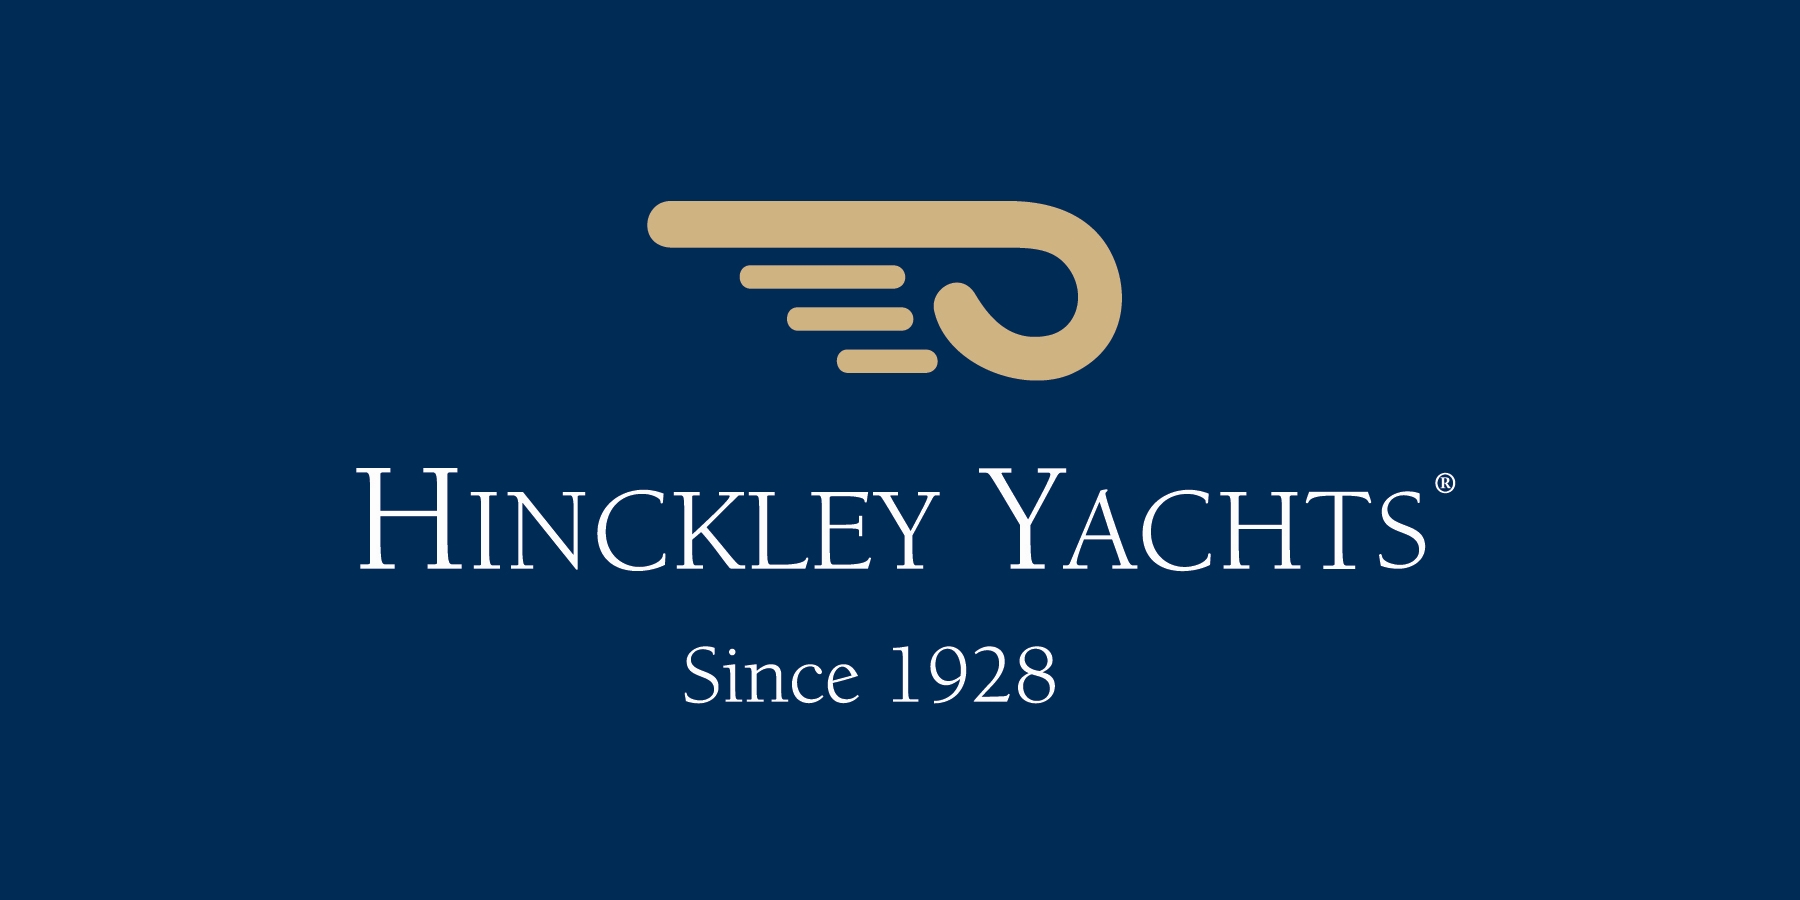 Hinckley Yachts